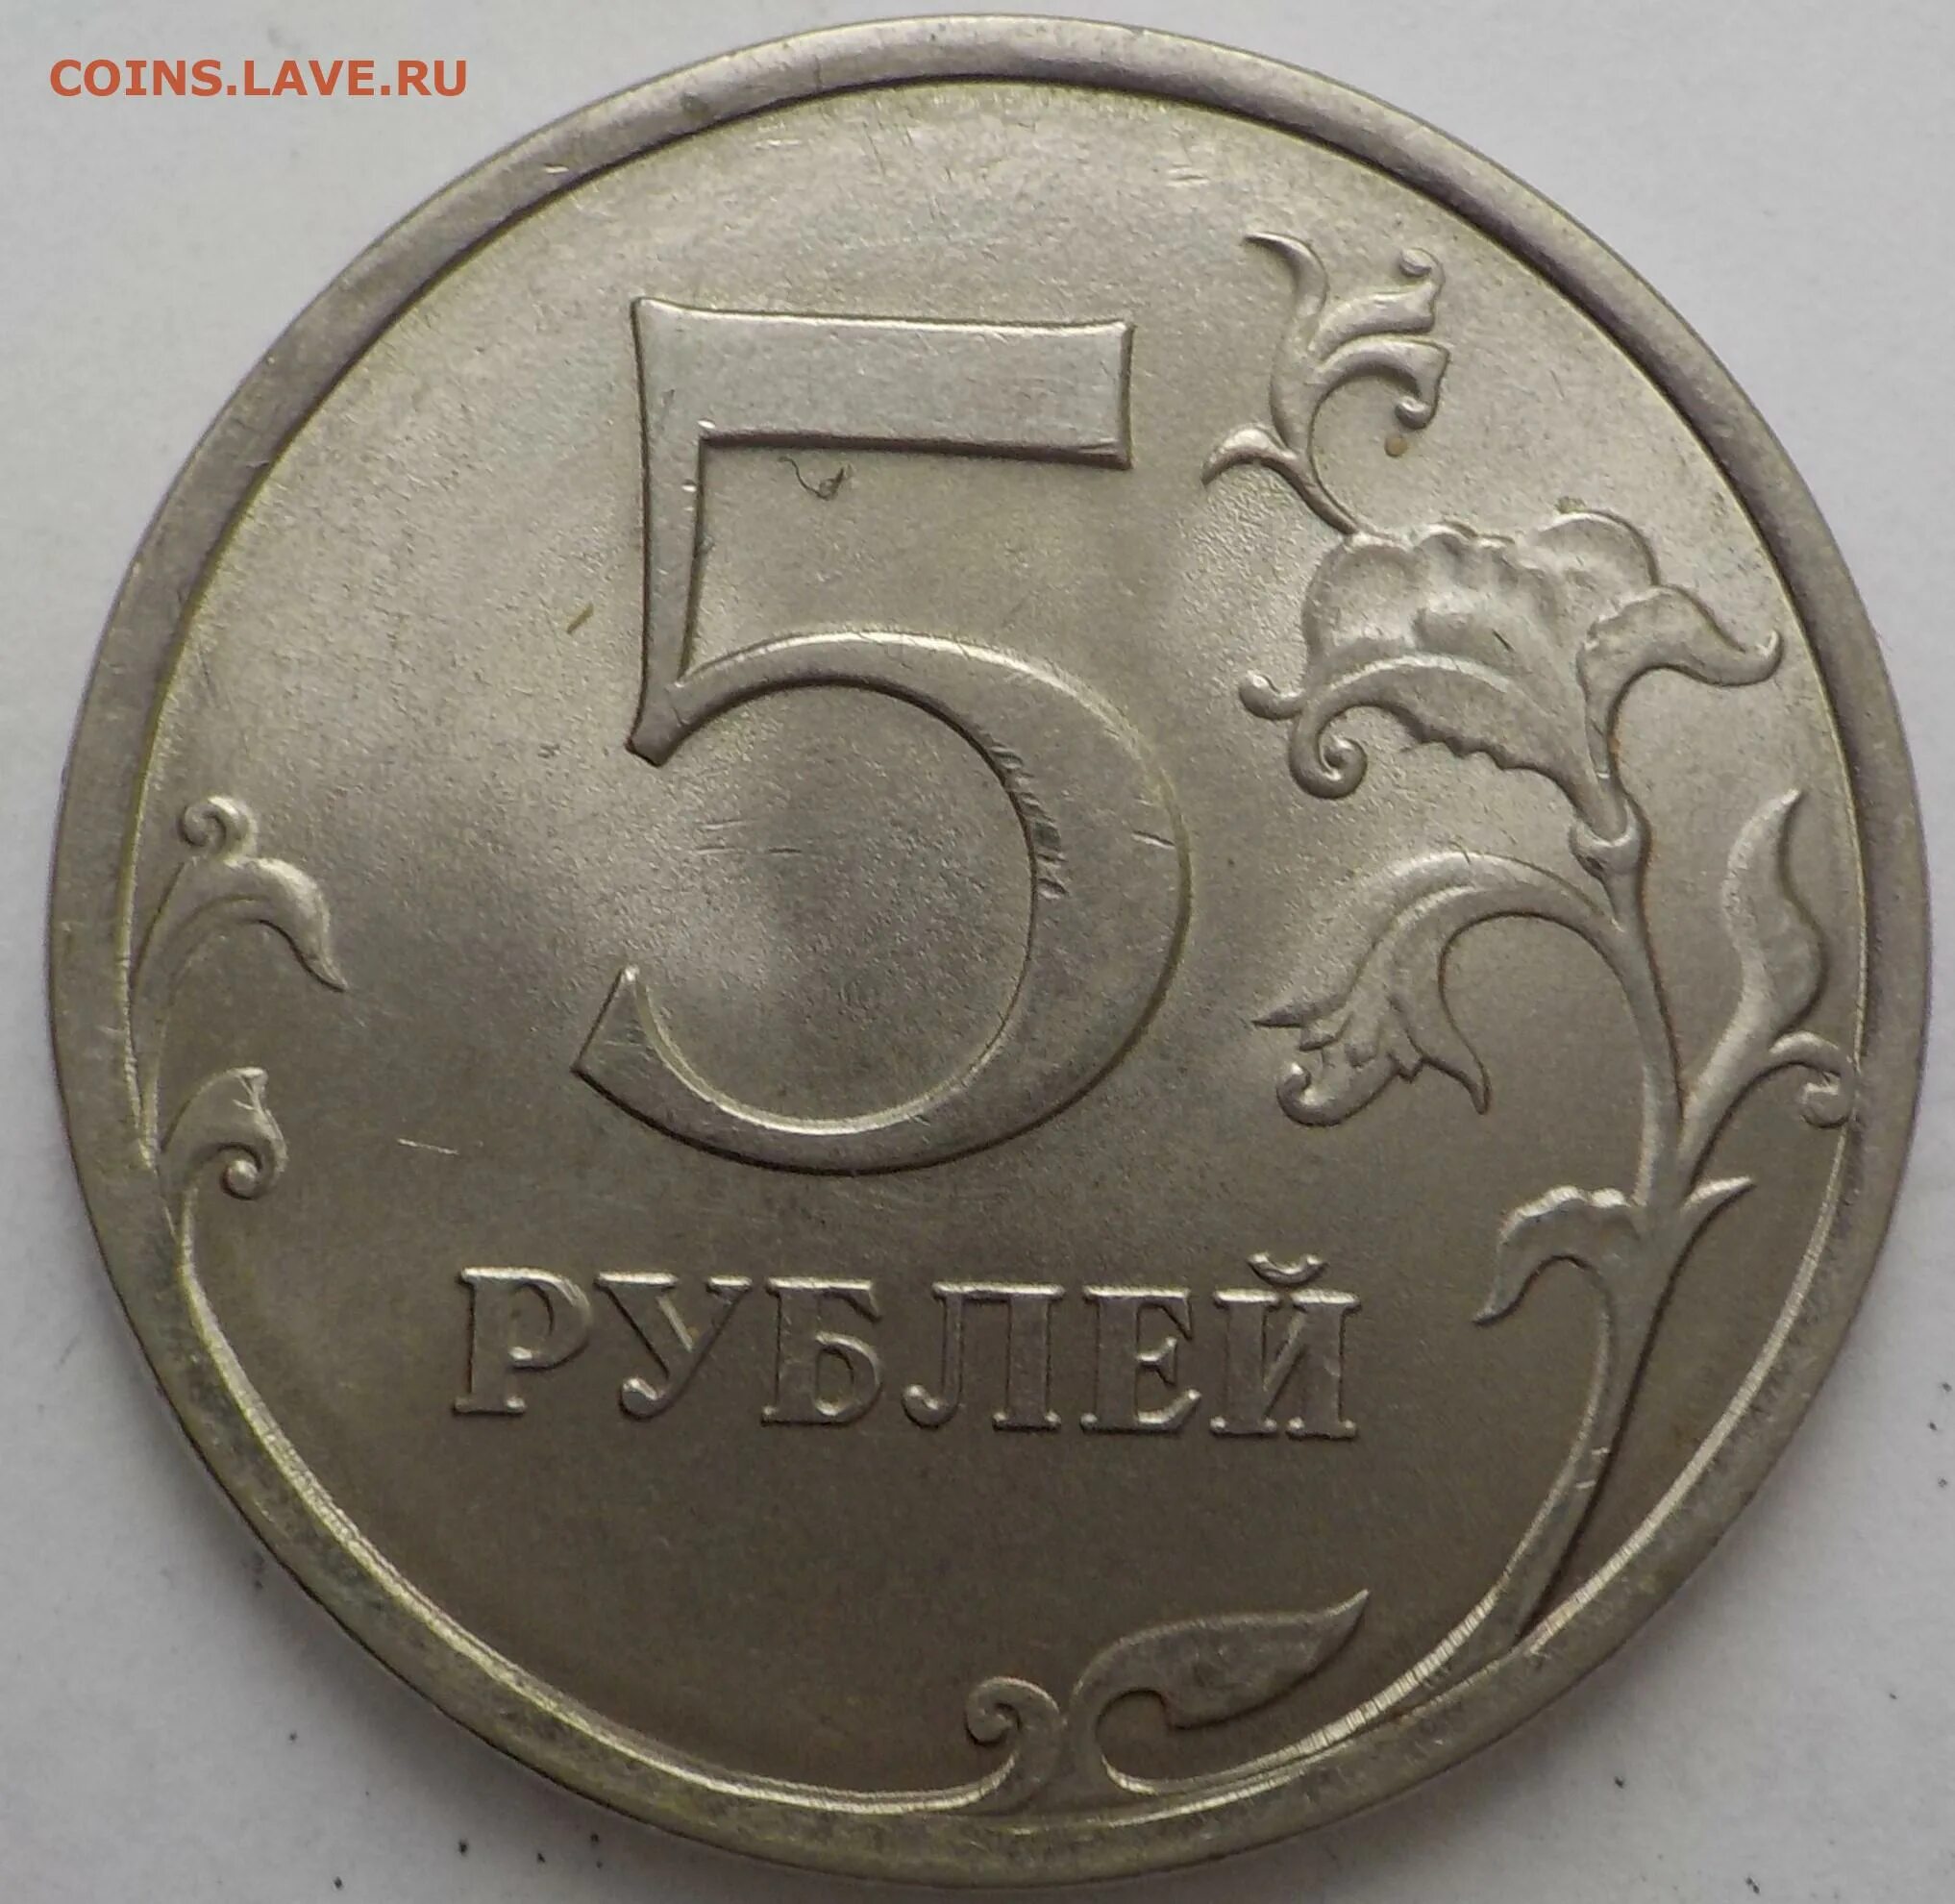 Пять рублей. Размер 5 рублевой монеты. Размер 5 рублей. 5 Рублей картинка.